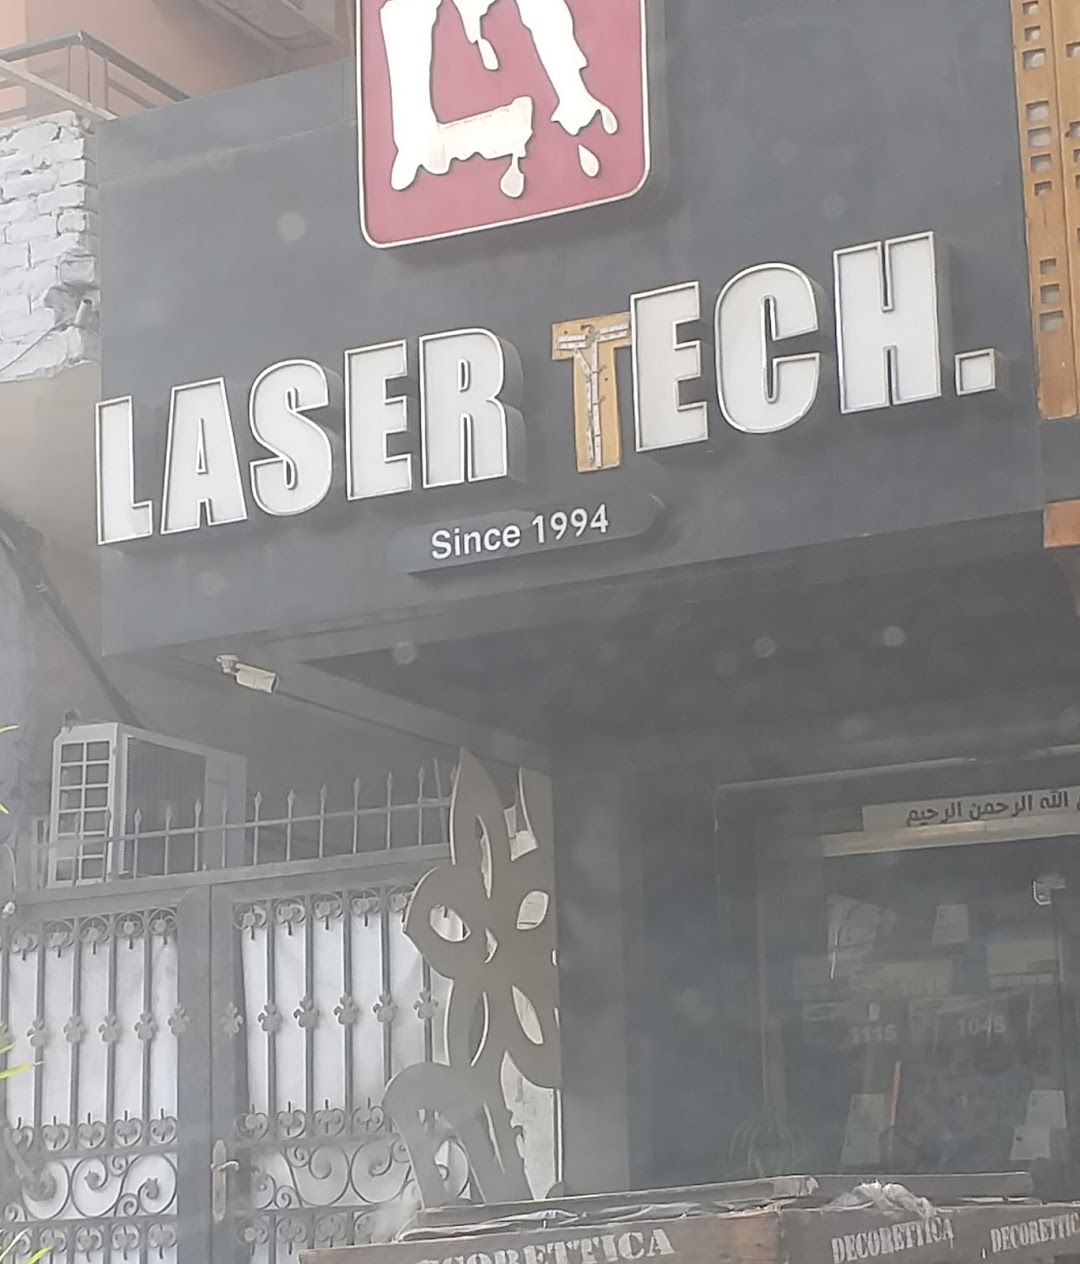 Laser Tech